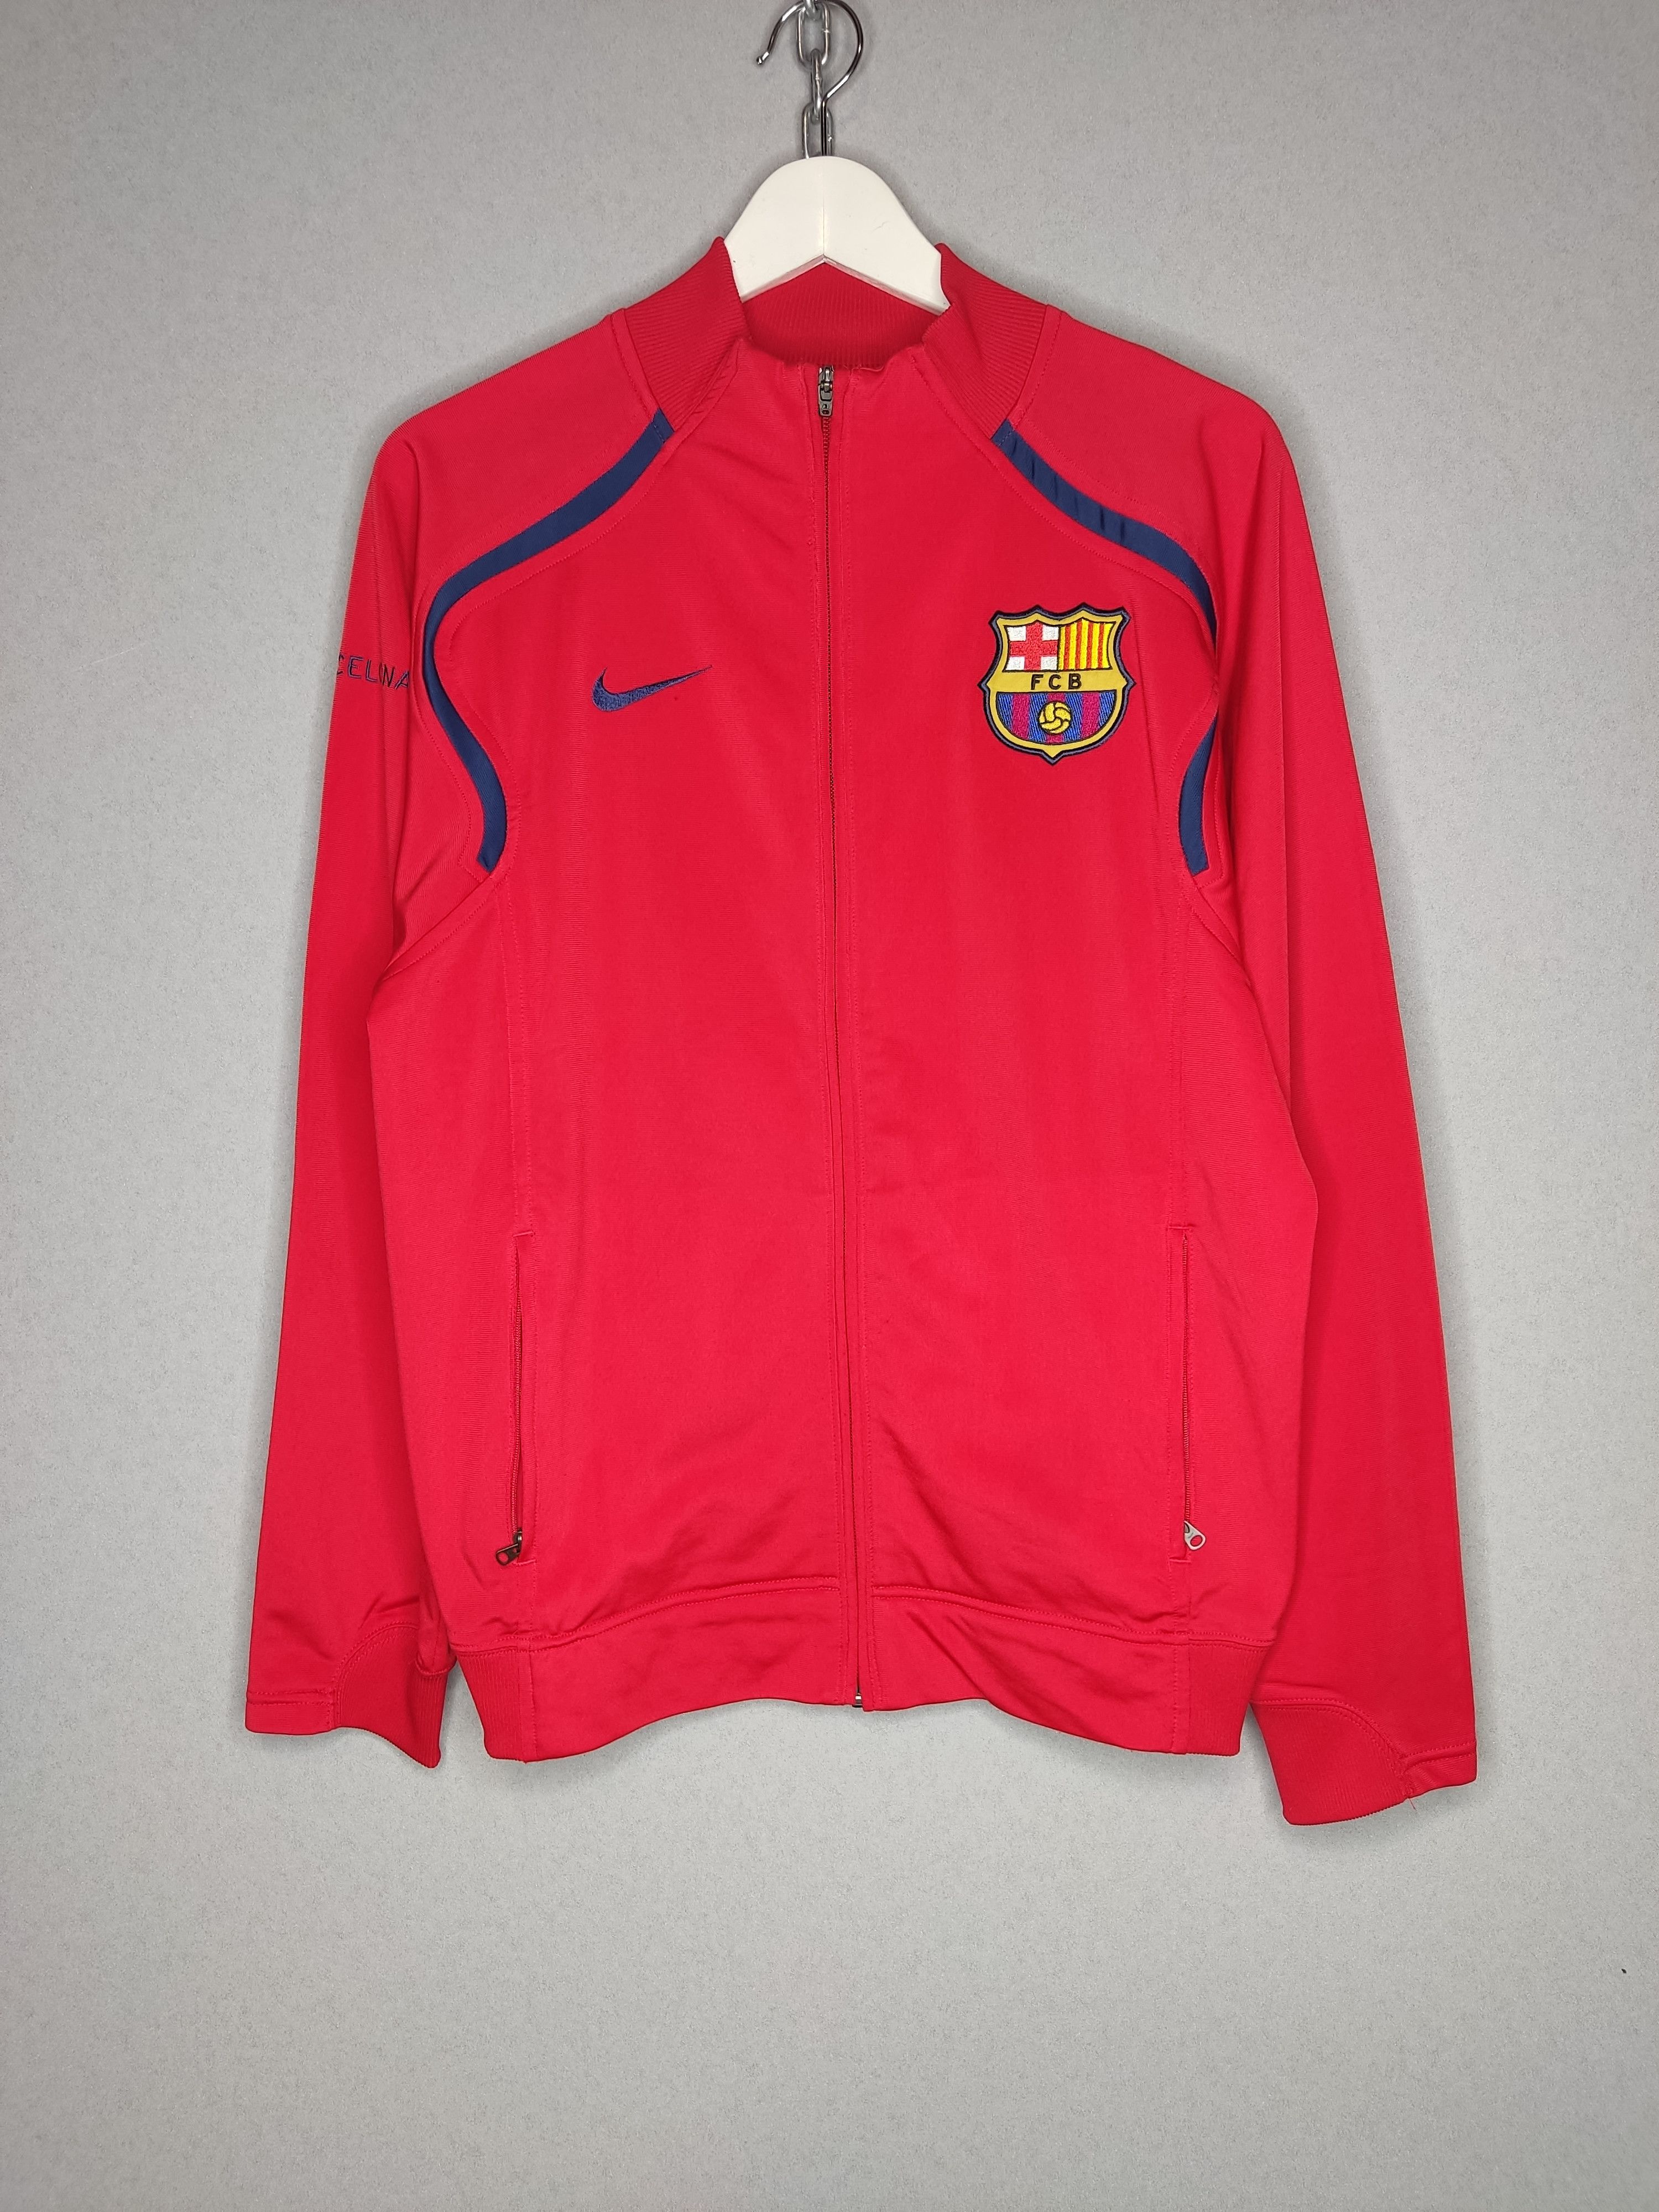 Nike RARE Vintage Nike FC Barcelona Barca Soccer Zip Up Jacket